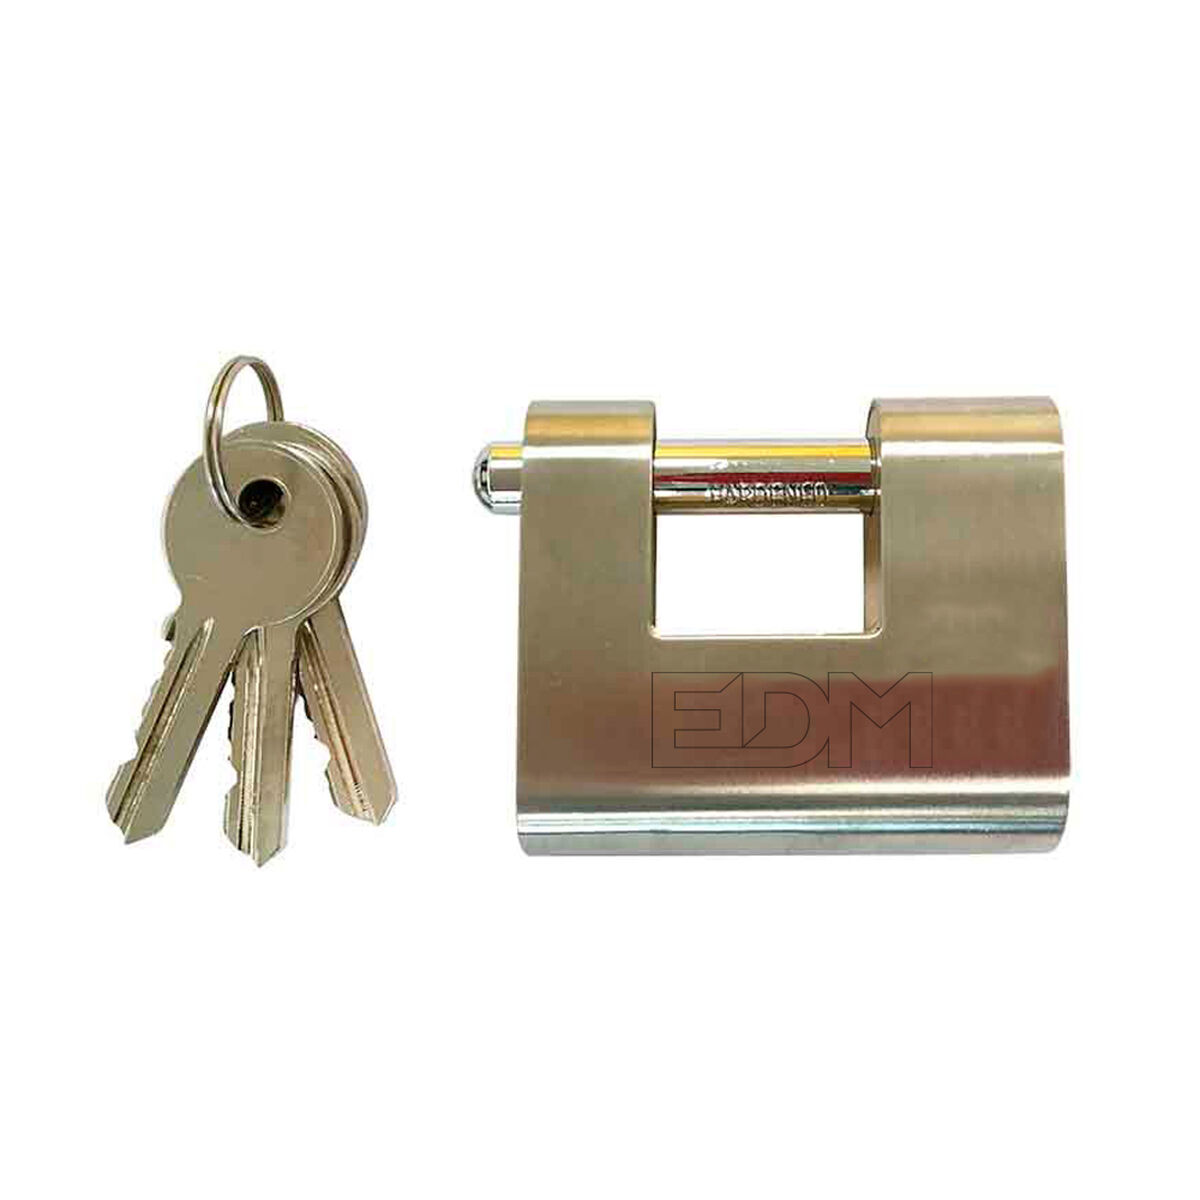 Lucchetto con chiave EDM Di sicurezza Ottone (6 x 5,3 x 2,55 cm)